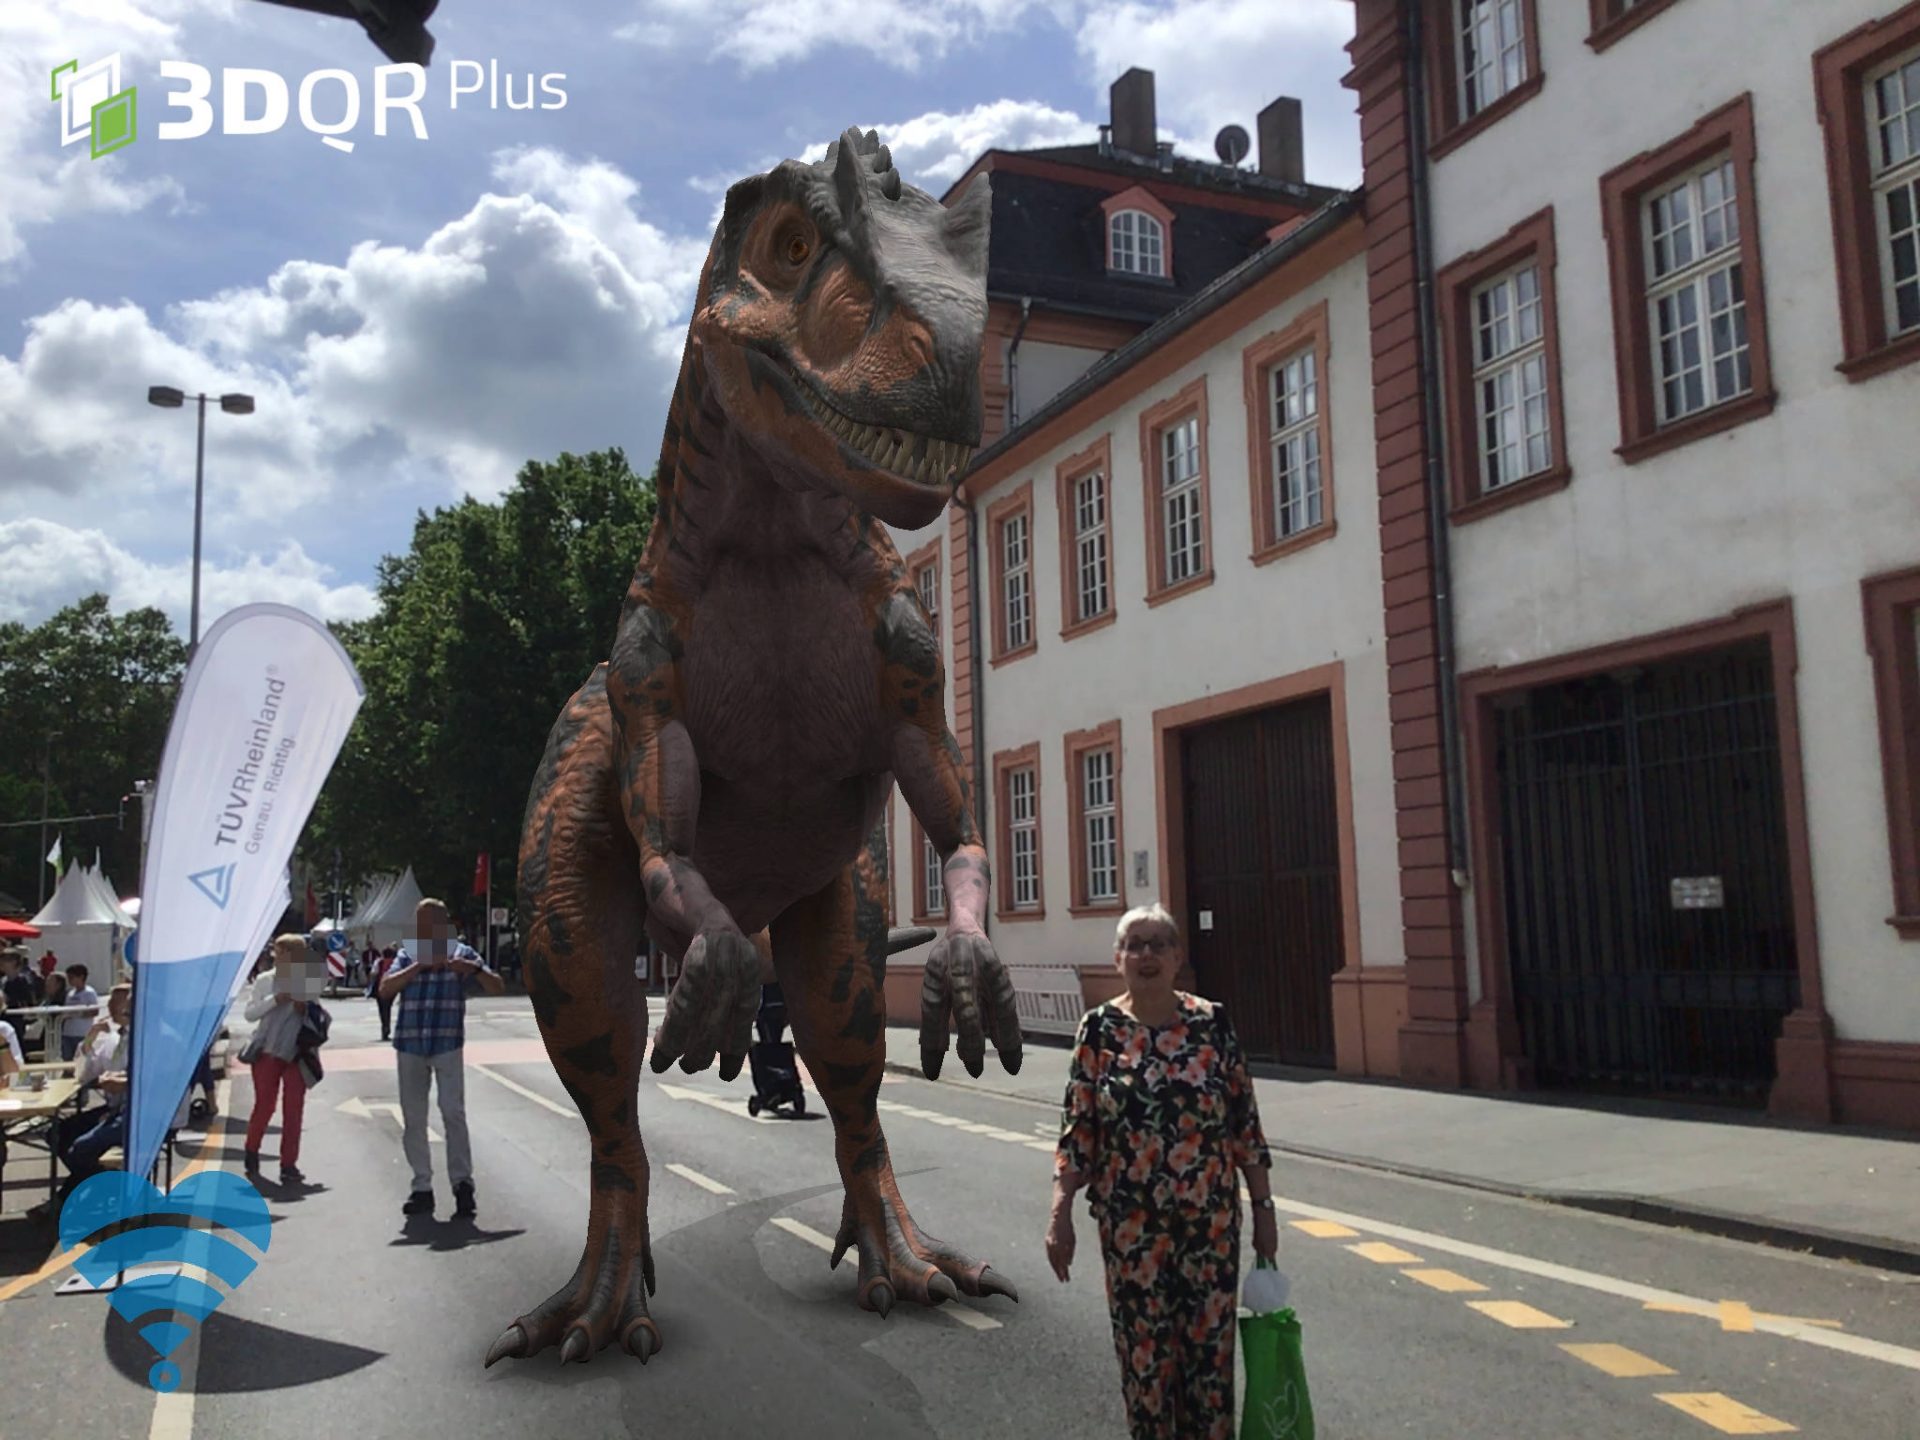 Eine Frau steht auf einer Straße mit Festständen. Hinter ihr ist ein animierter Dinosaurier zu sehen.